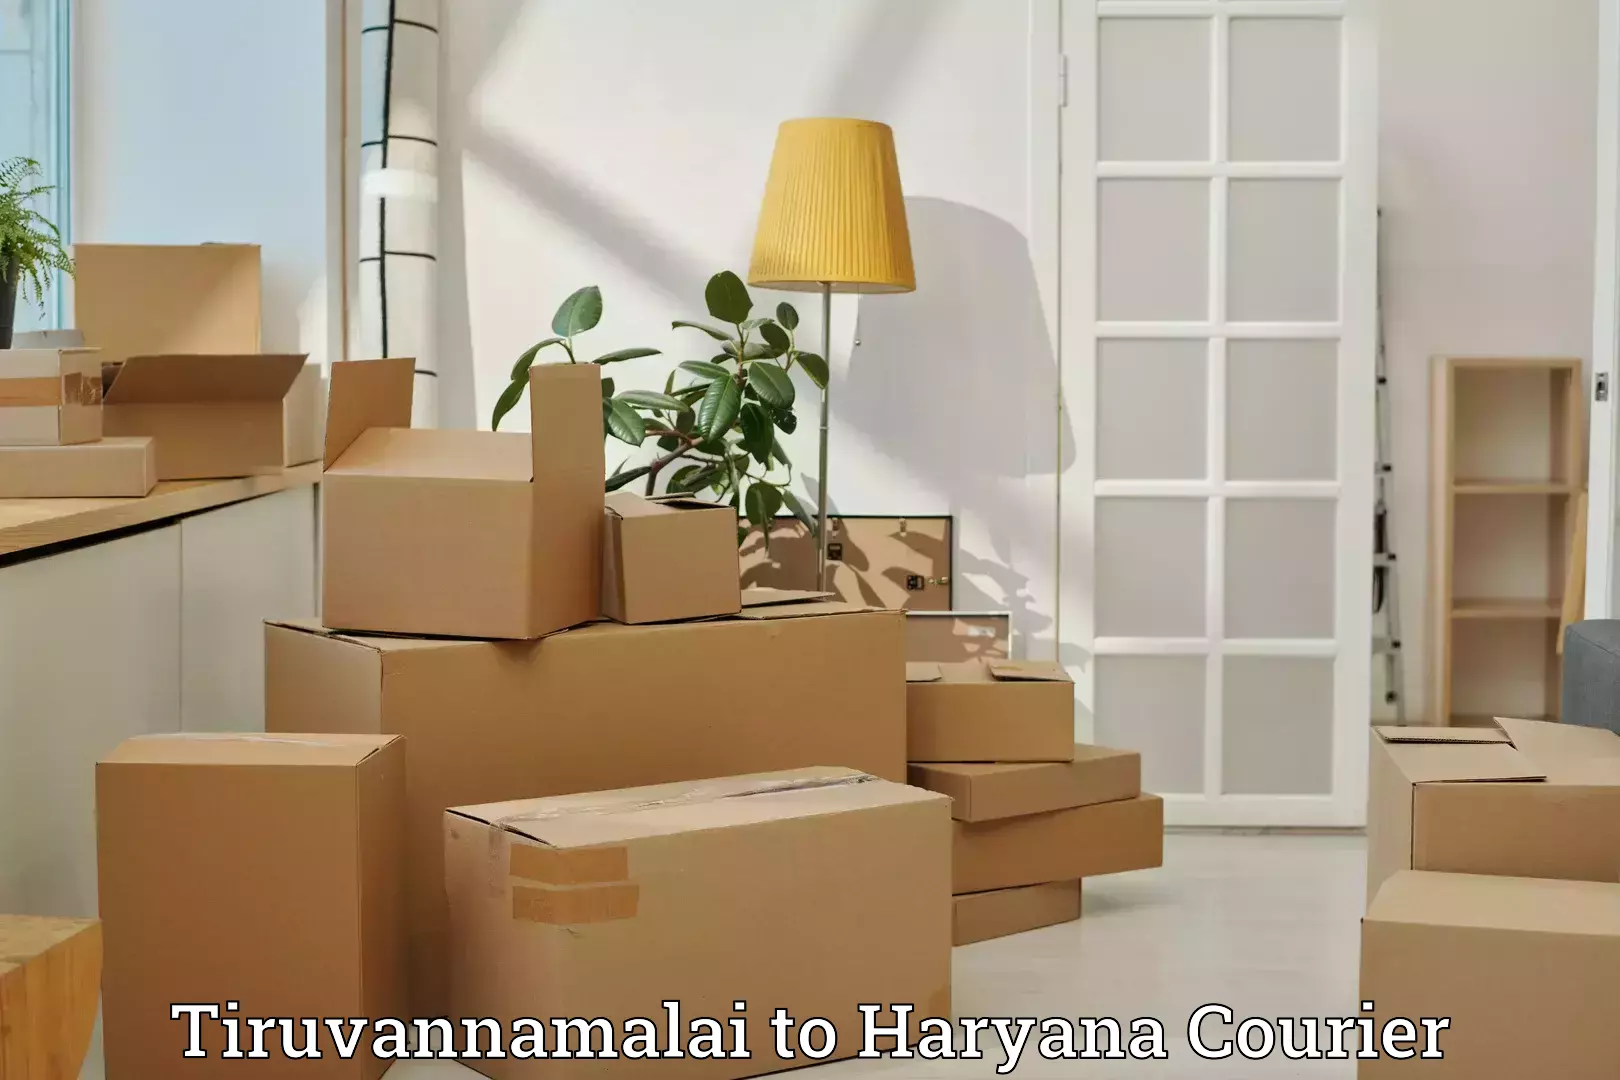 Baggage transport updates Tiruvannamalai to NCR Haryana